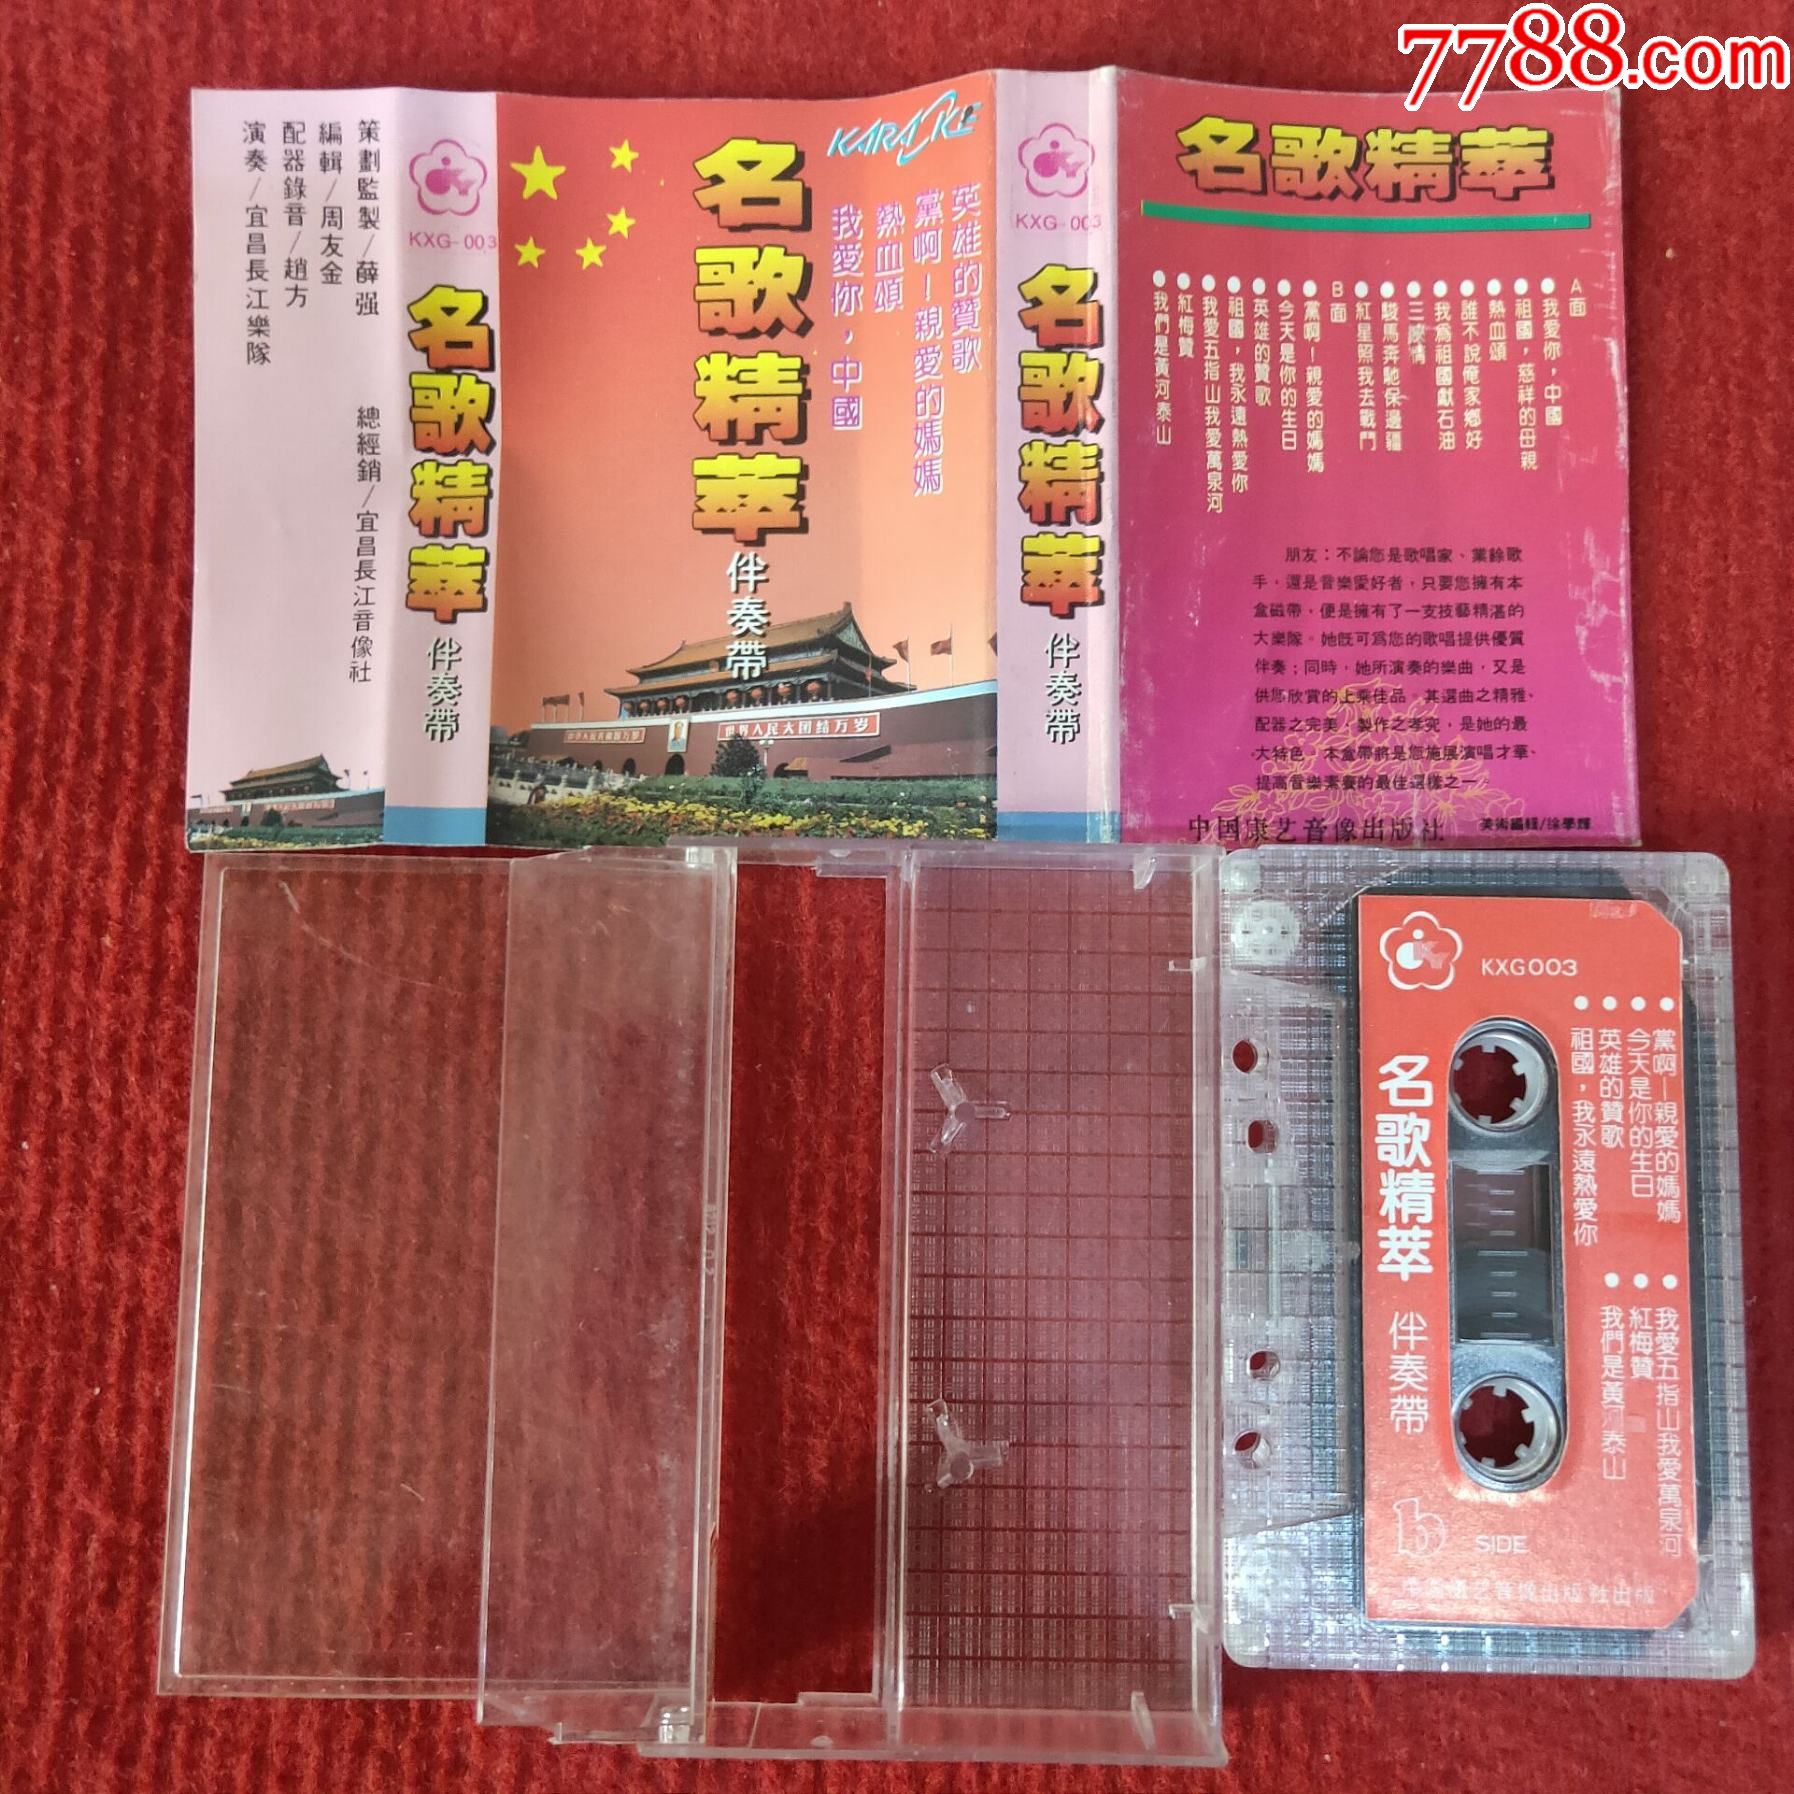 【原装正版磁带】名歌精粹伴奏带中国康艺音像出版社出版发行